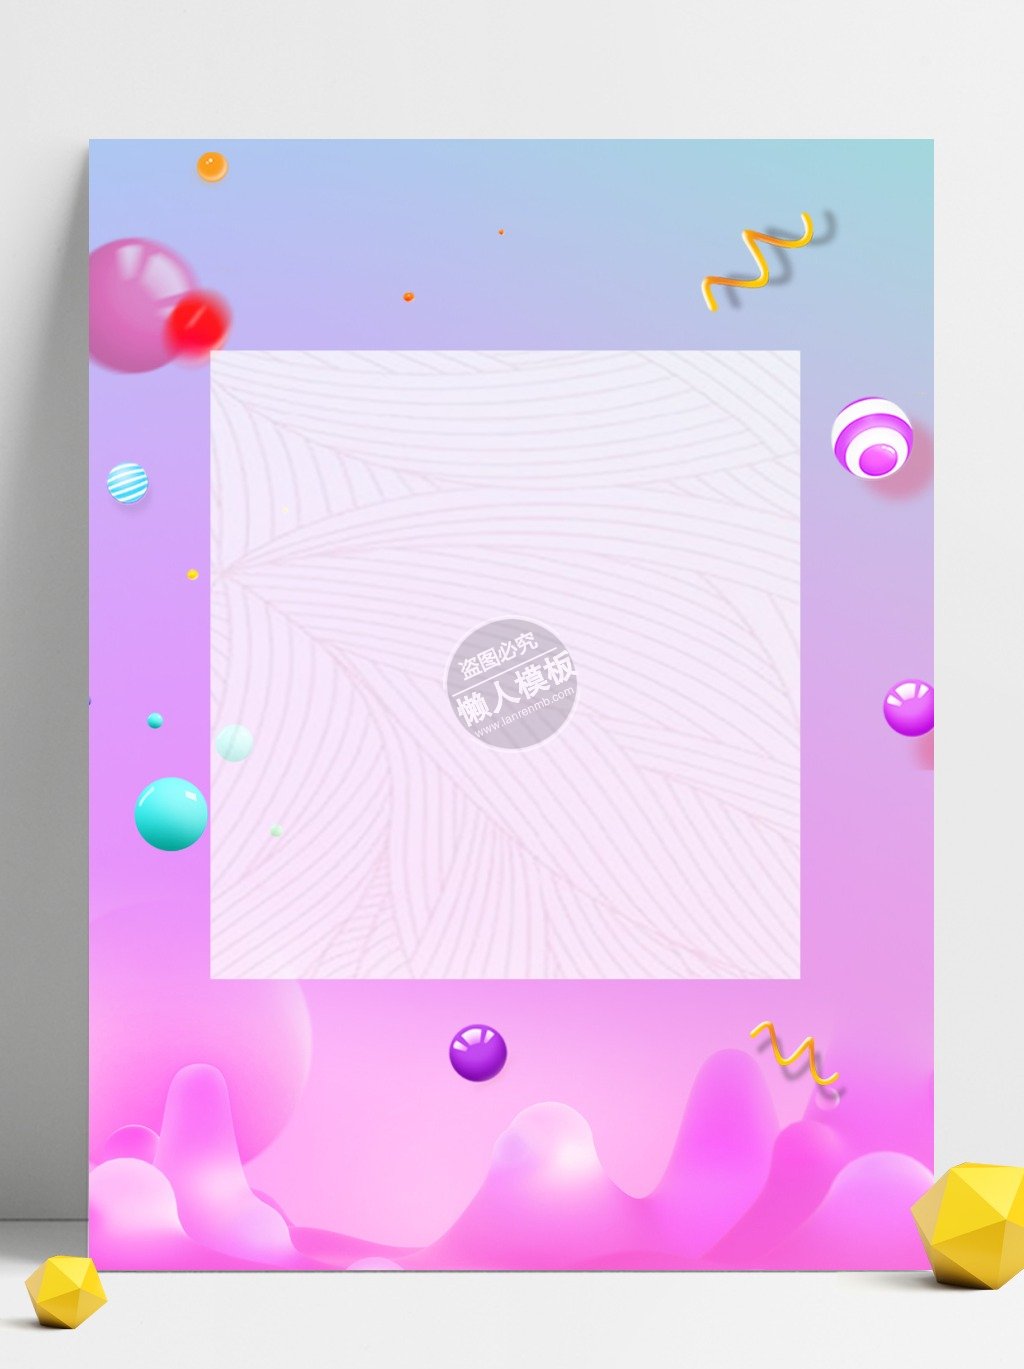 粉蓝色渐变创意海报背景ui界面设计移动端手机网页psd素材下载